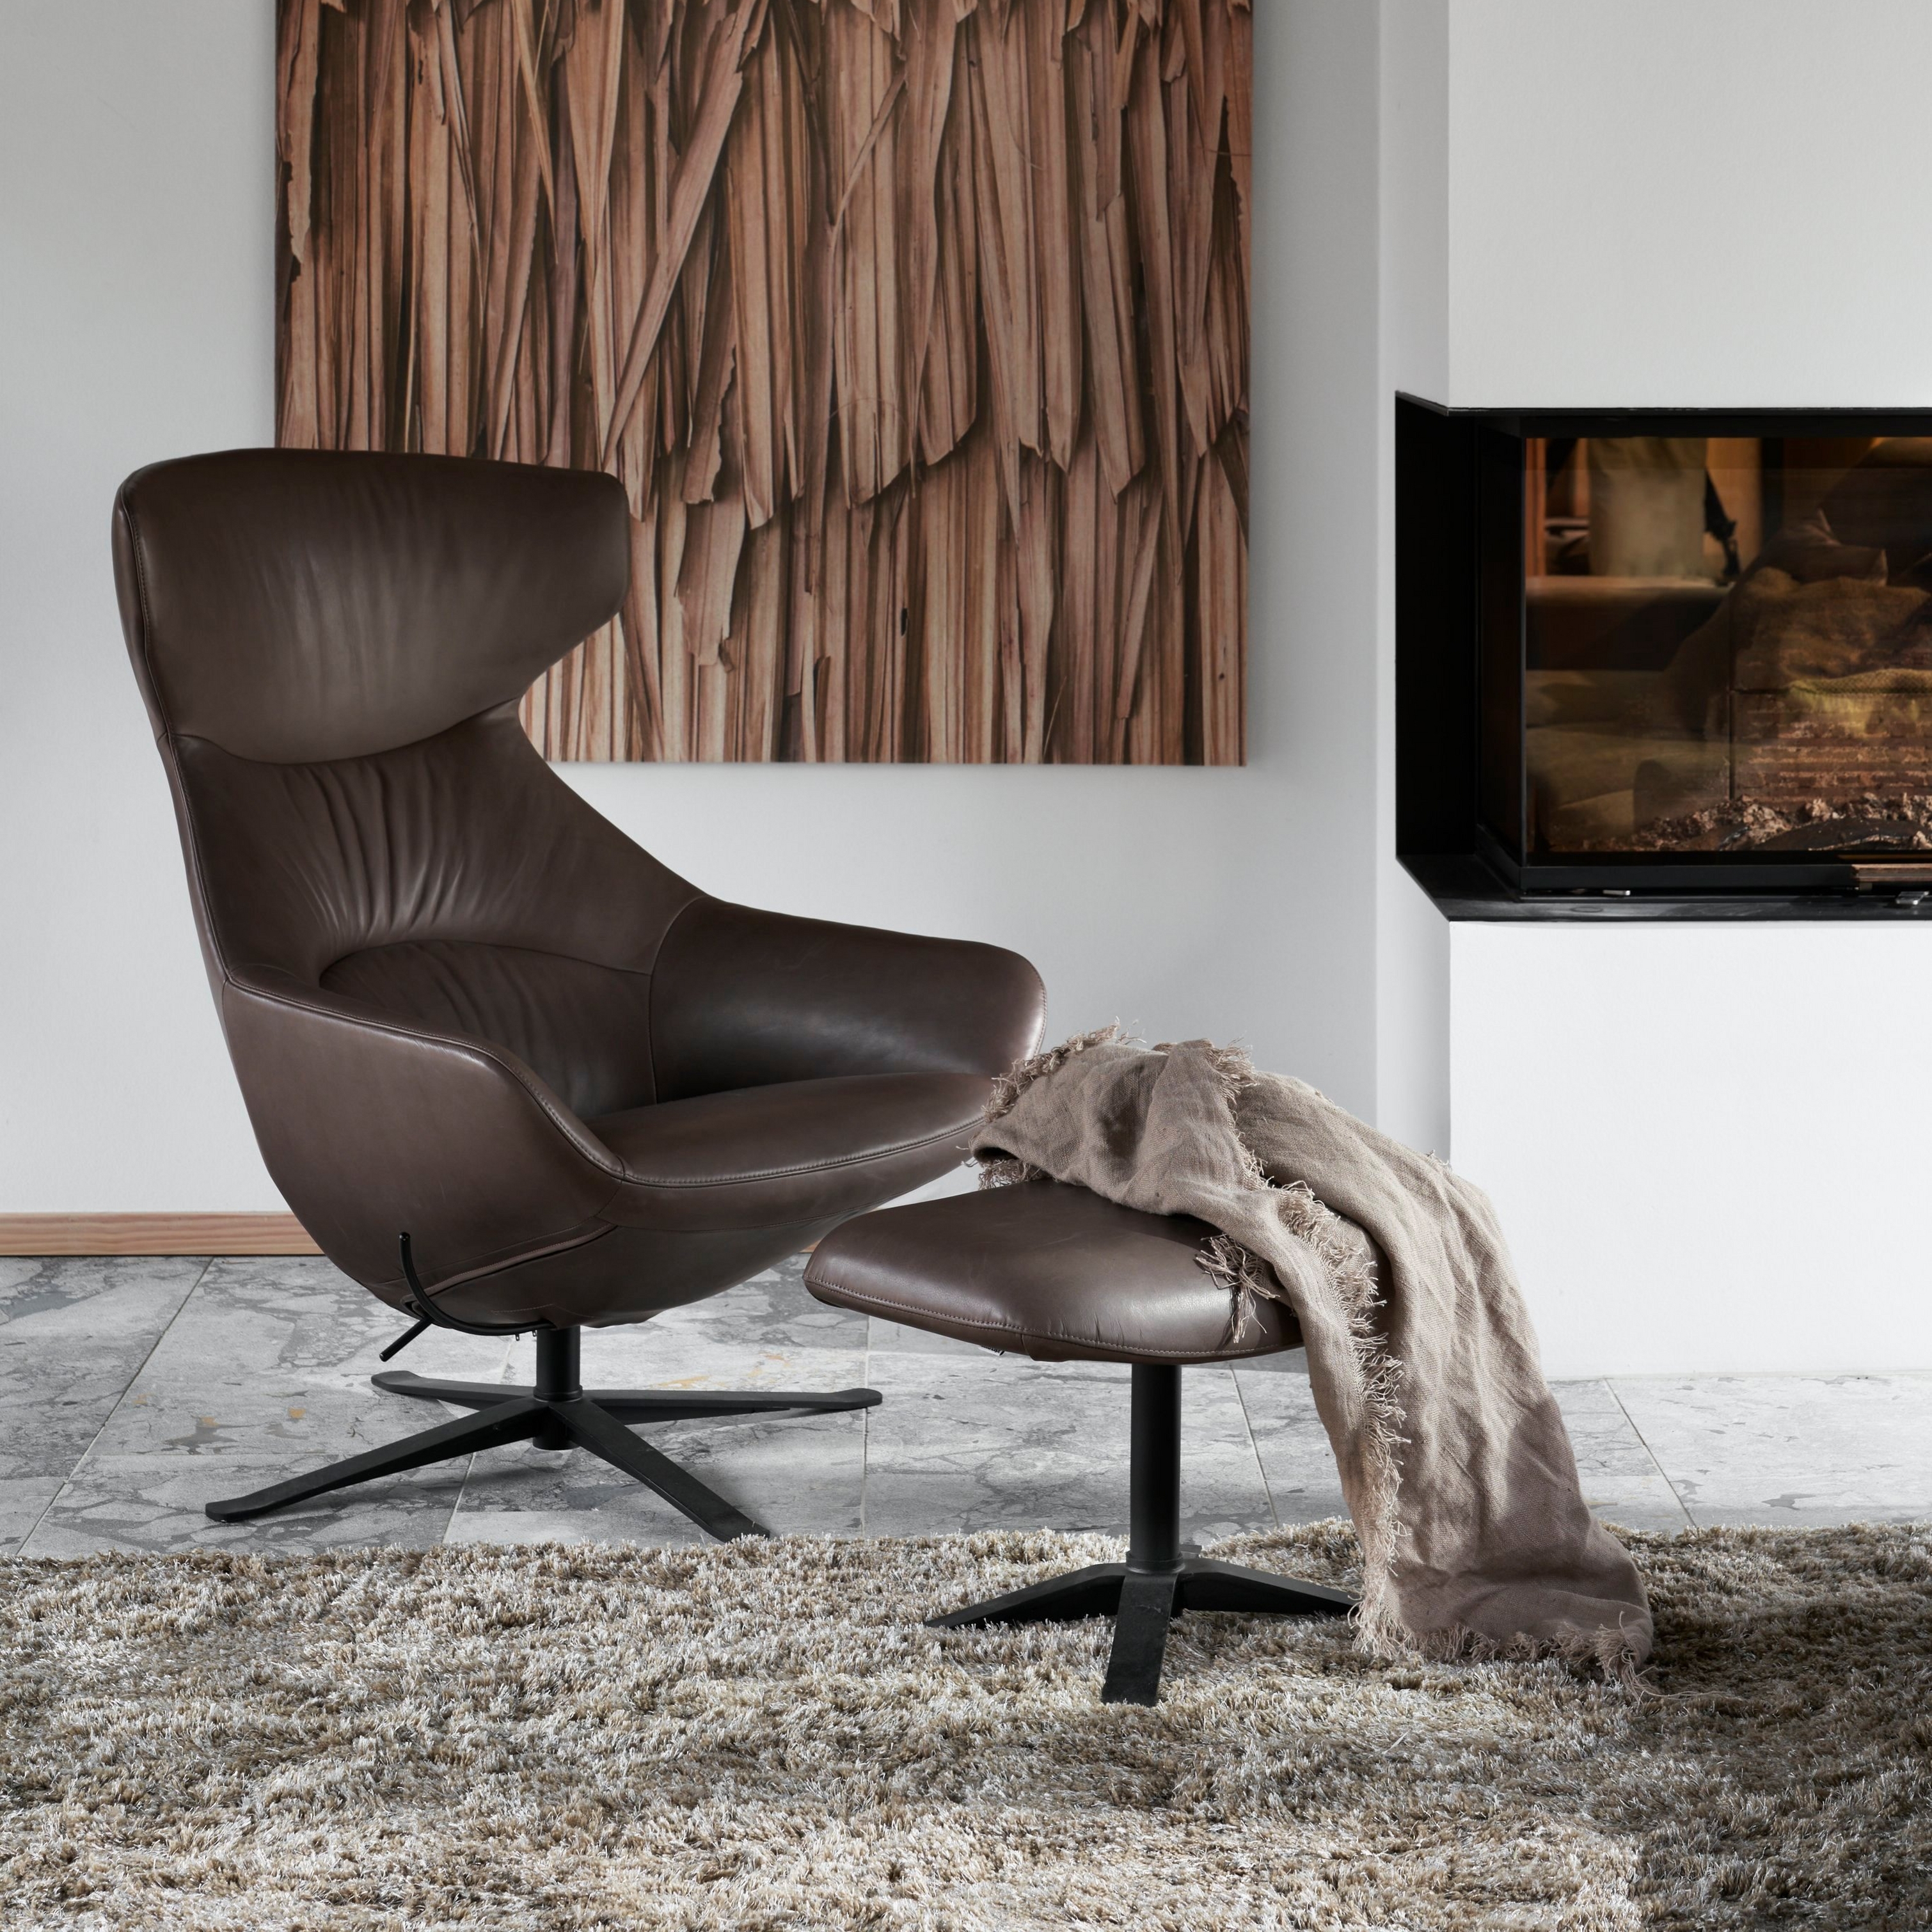 Moderna silla de piel marrón con puf, alfombra peluda, arte de madera y chimenea.